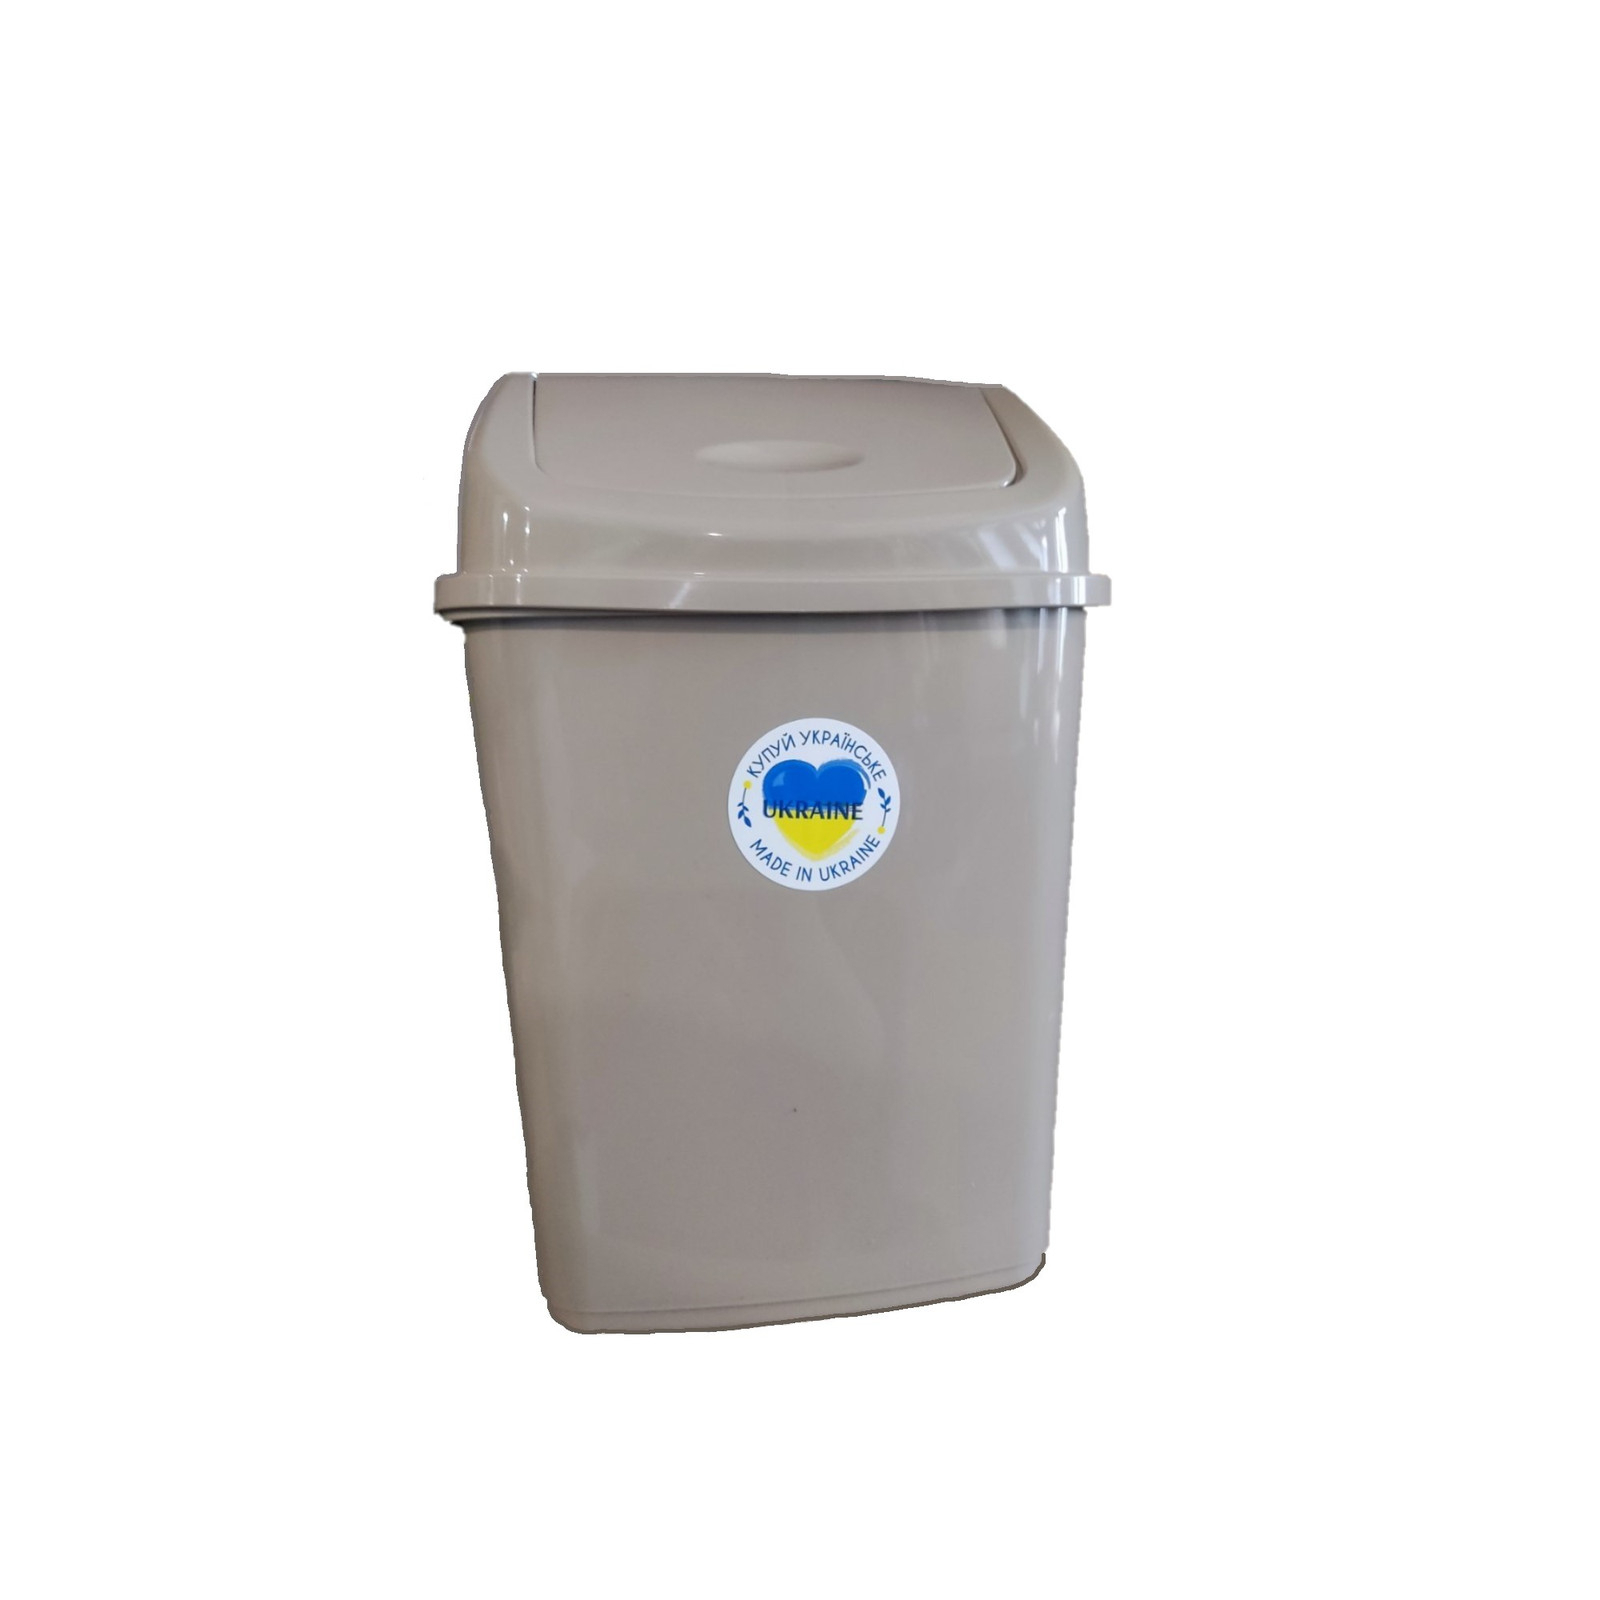 Контейнер для мусора Алеана Какао 5 л (алн 122061/какао)